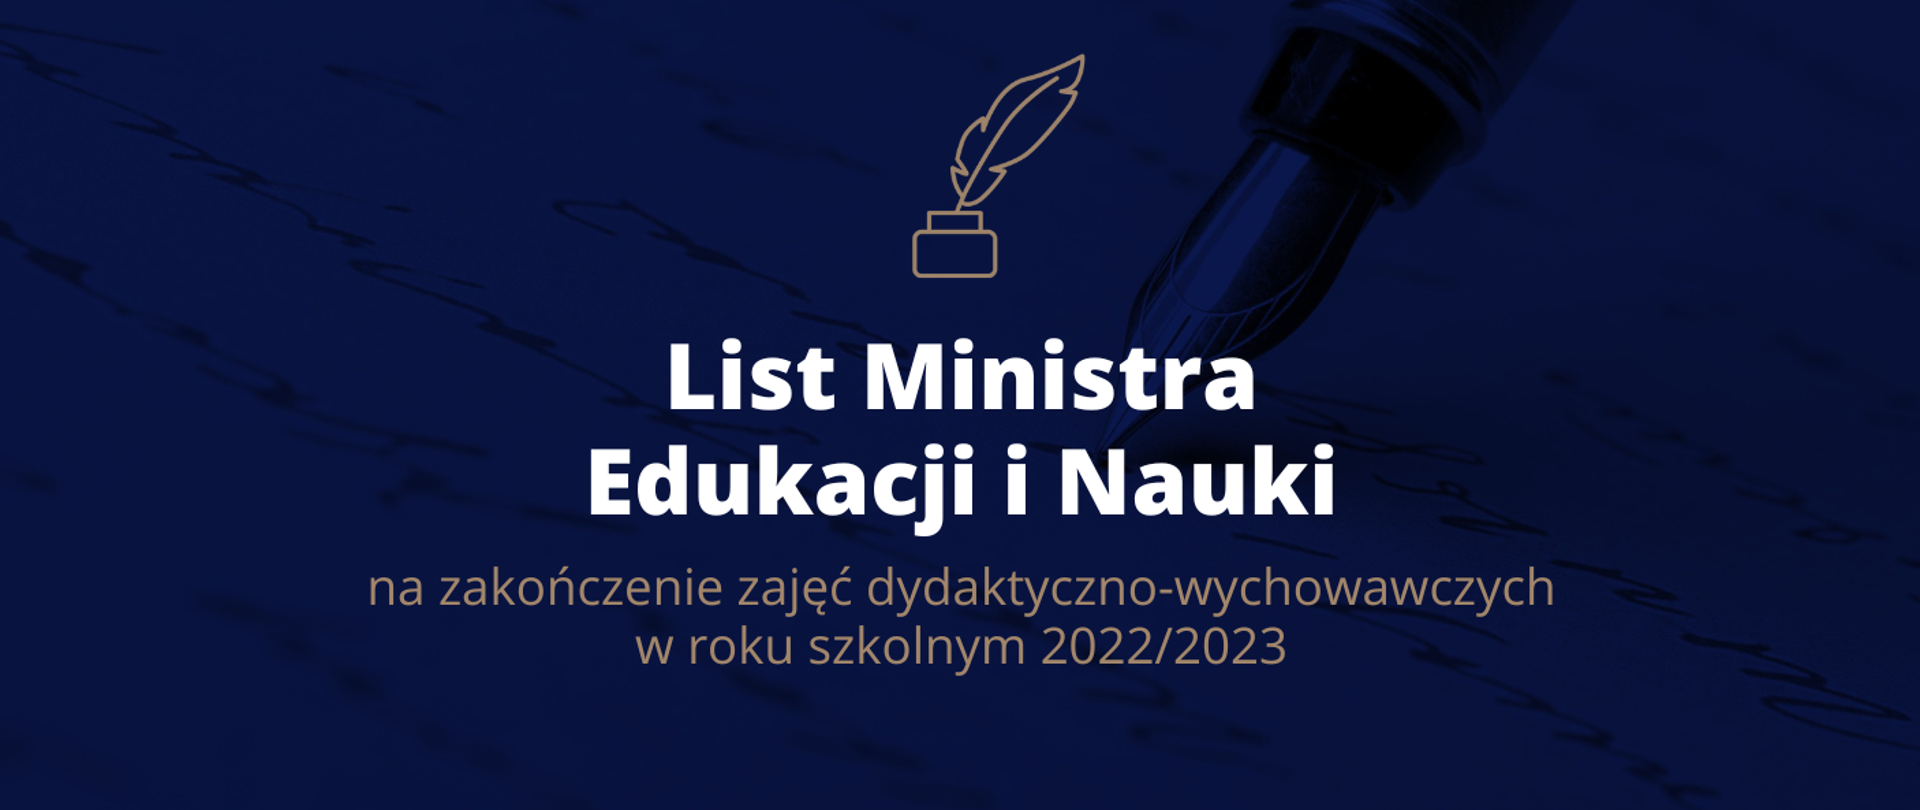 Grafika z tekstem: List Ministra Edukacji i Nauki na zakończenie zajęć dydaktyczno-wychowawczych w roku szkolnym 2022/2023